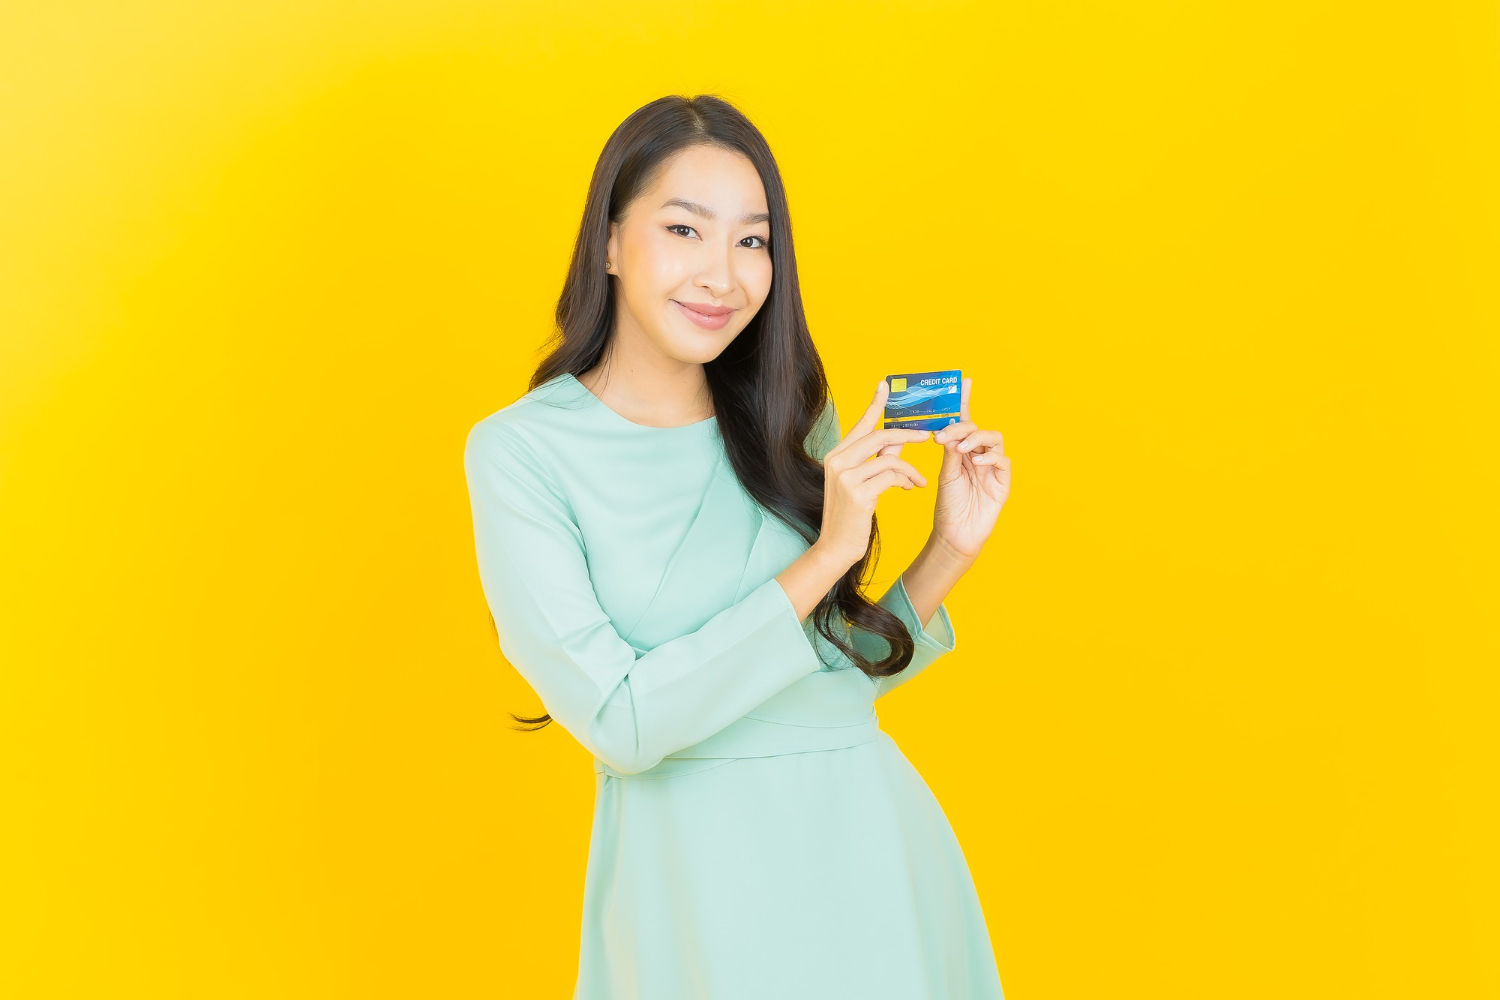 jovem asiática sorrindo com cartão de crédito em amarelo